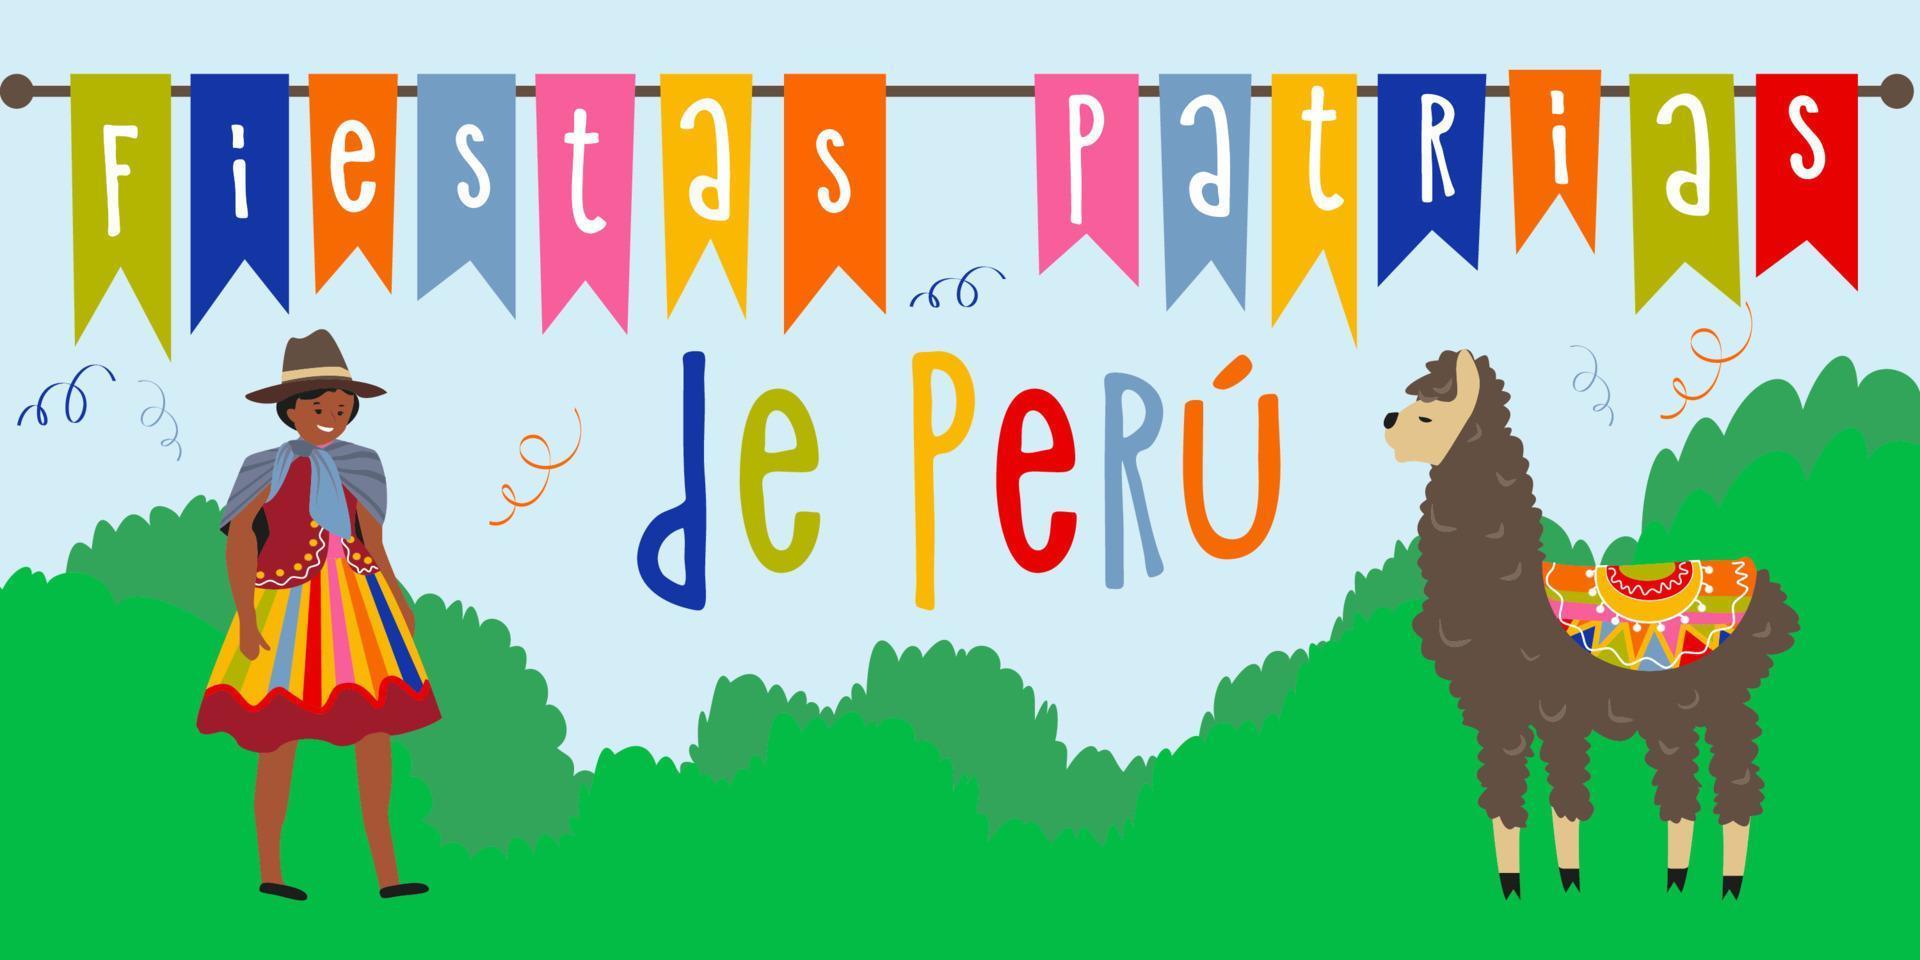 28 Juli. Peru glücklich Unabhängigkeit Tag Gruß Karte. Feier Hintergrund mit Feuerwerk, Flaggen und Text. Vektor Illustration